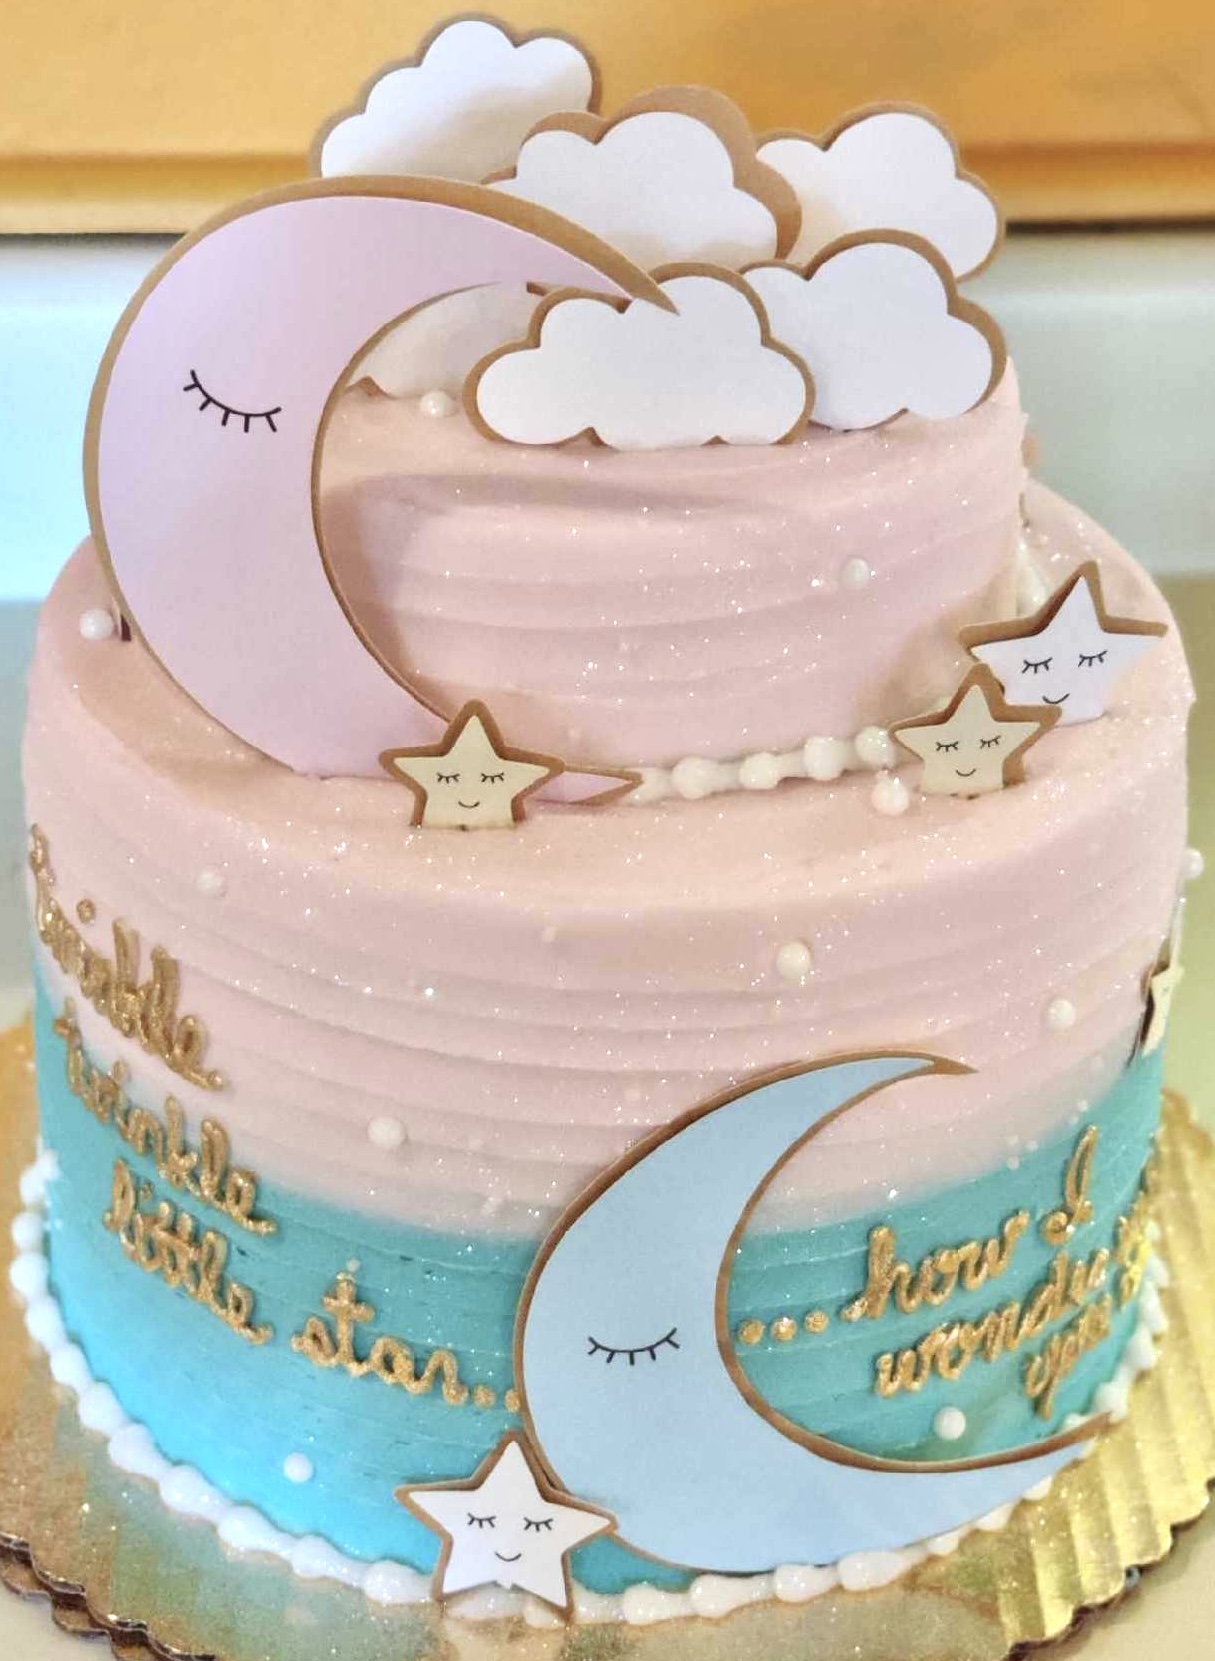 A Twinkle Little Star Cake